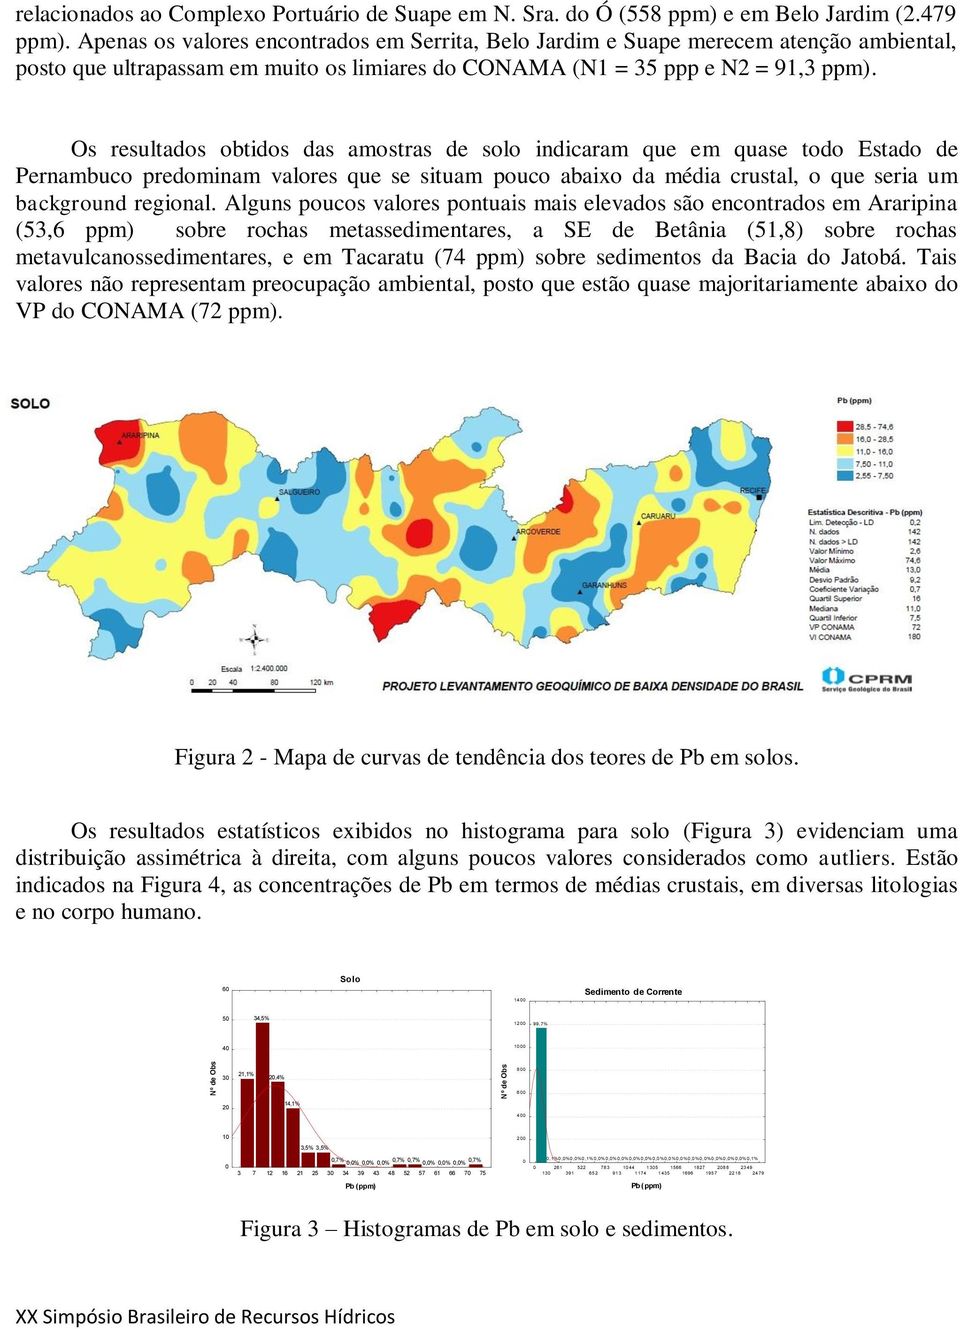 Os resultados obtidos das amostras de solo indicaram que em quase todo Estado de Pernambuco predominam valores que se situam pouco abaixo da média crustal, o que seria um background regional.